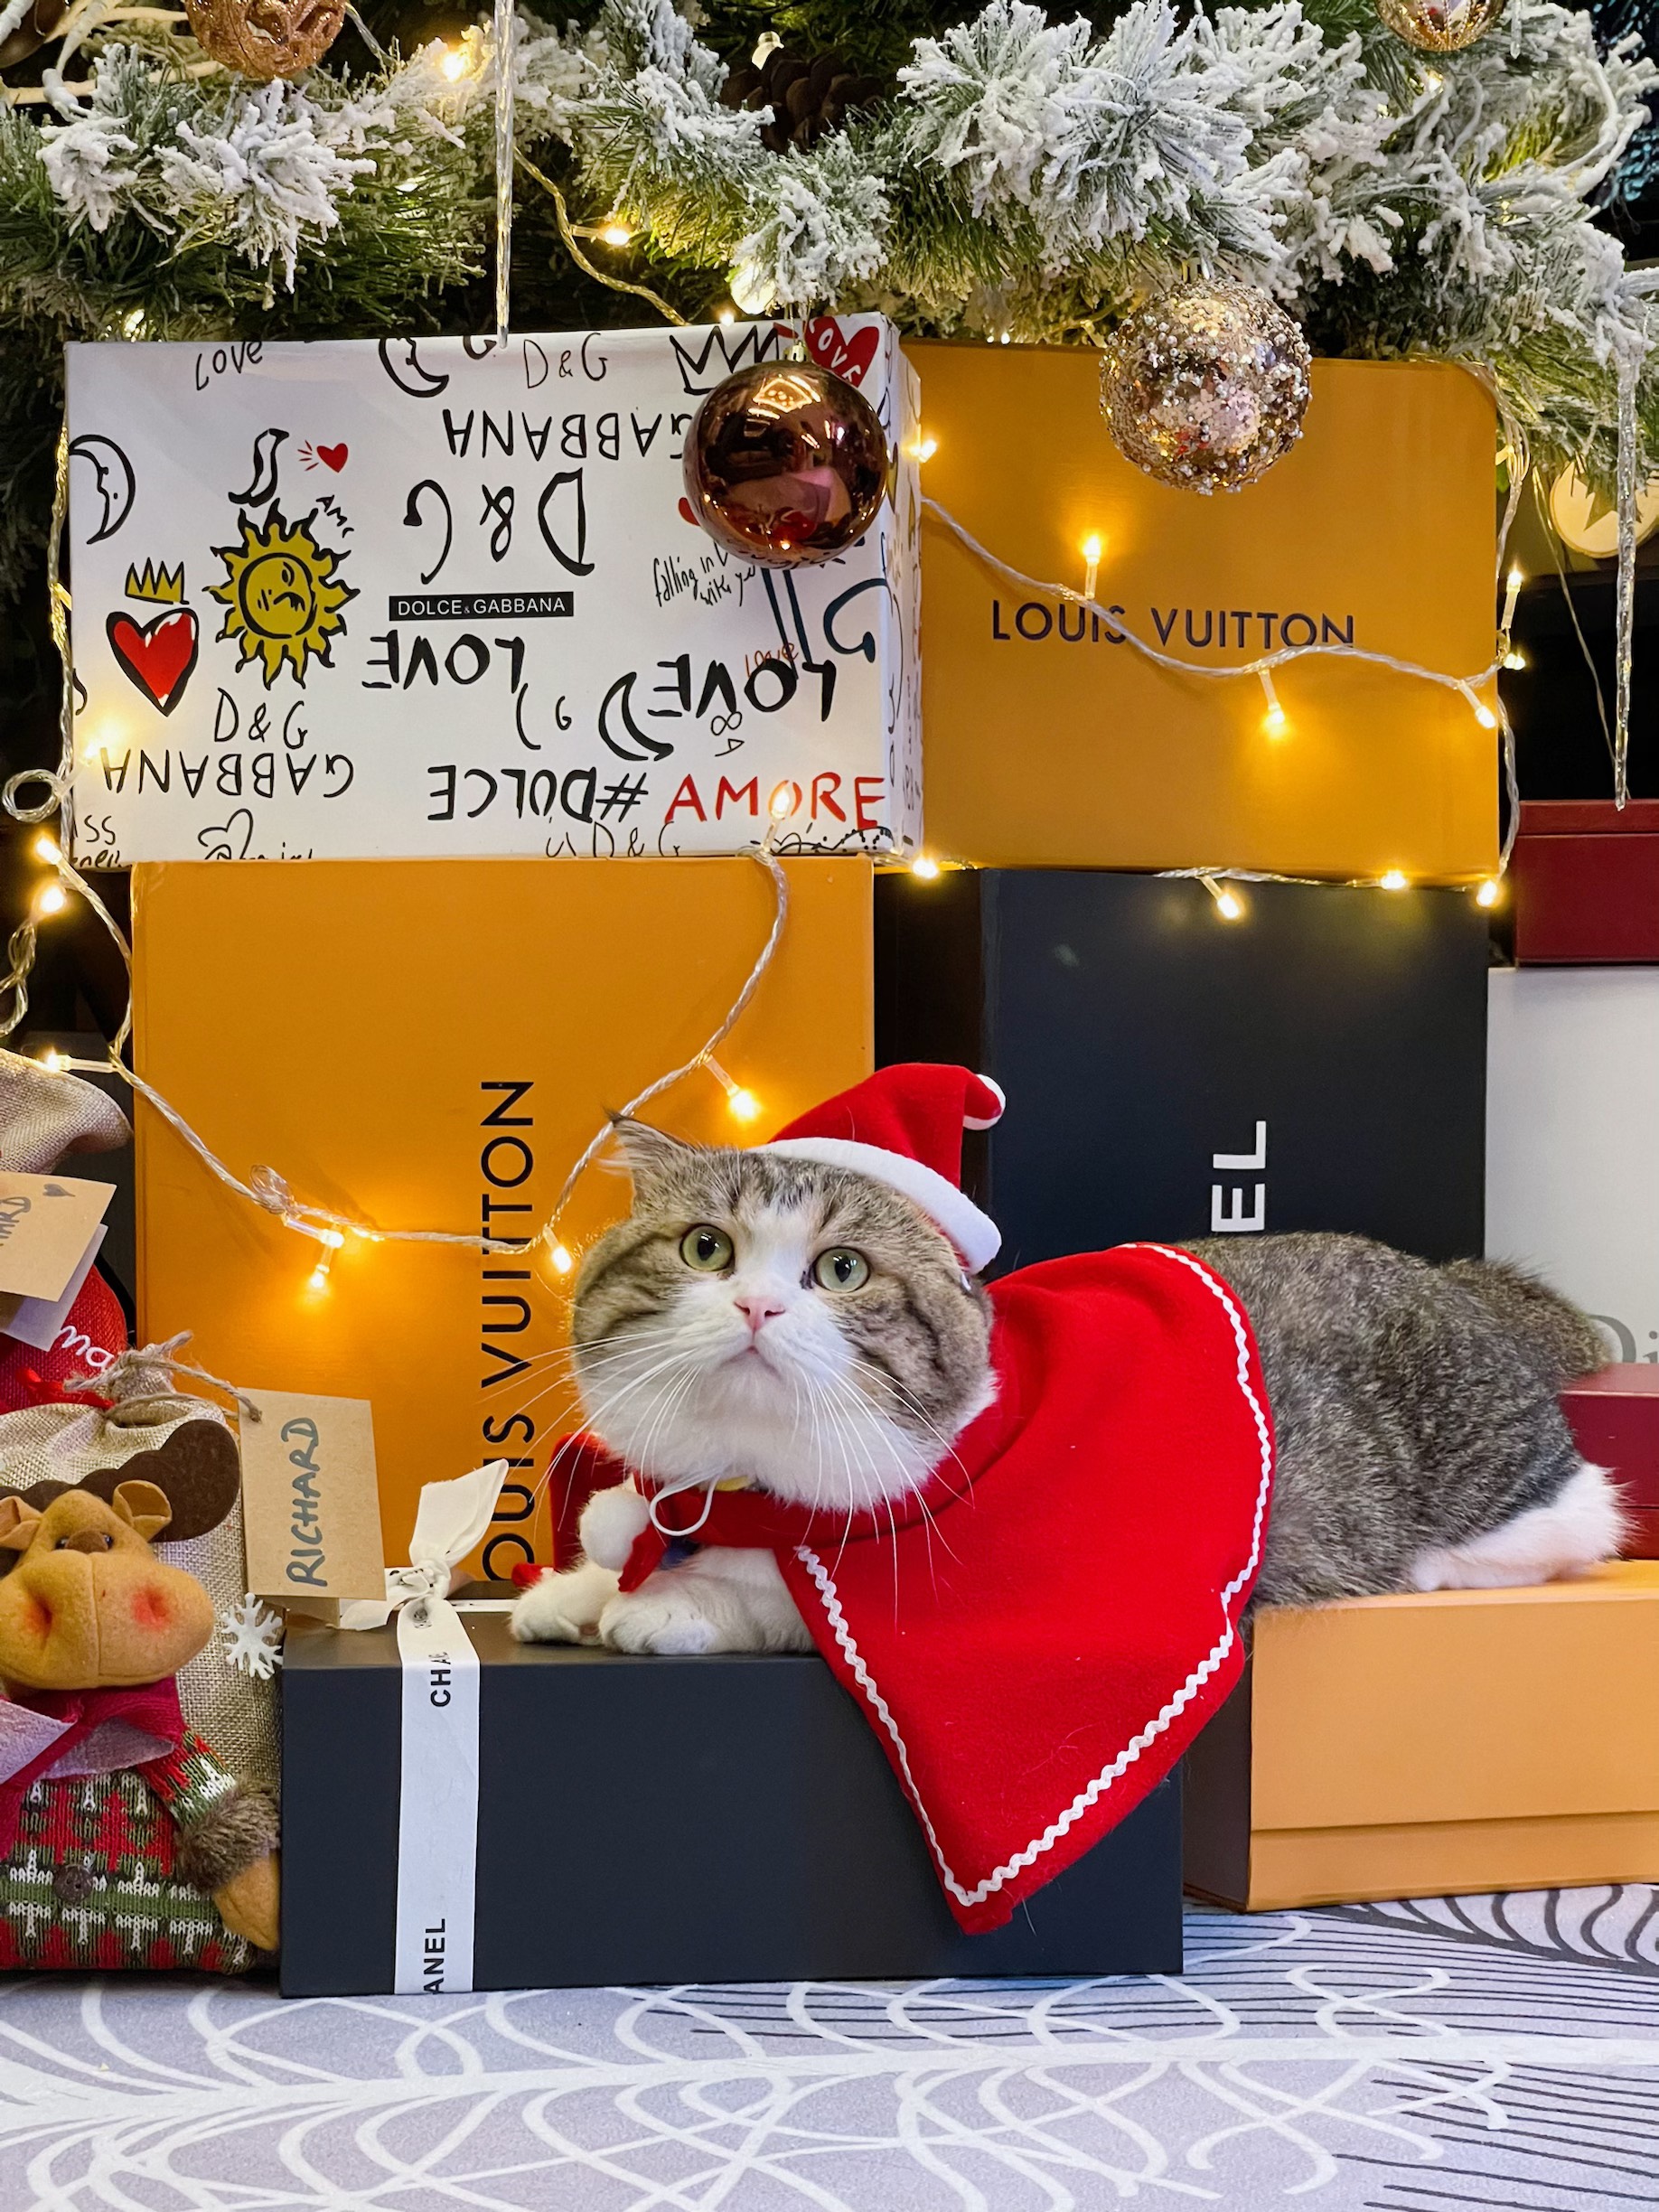 Chú mèo cưng xinh xắn cũng “lên đồ” đón Giáng sinh cùng chủ nhân đấy nhé!